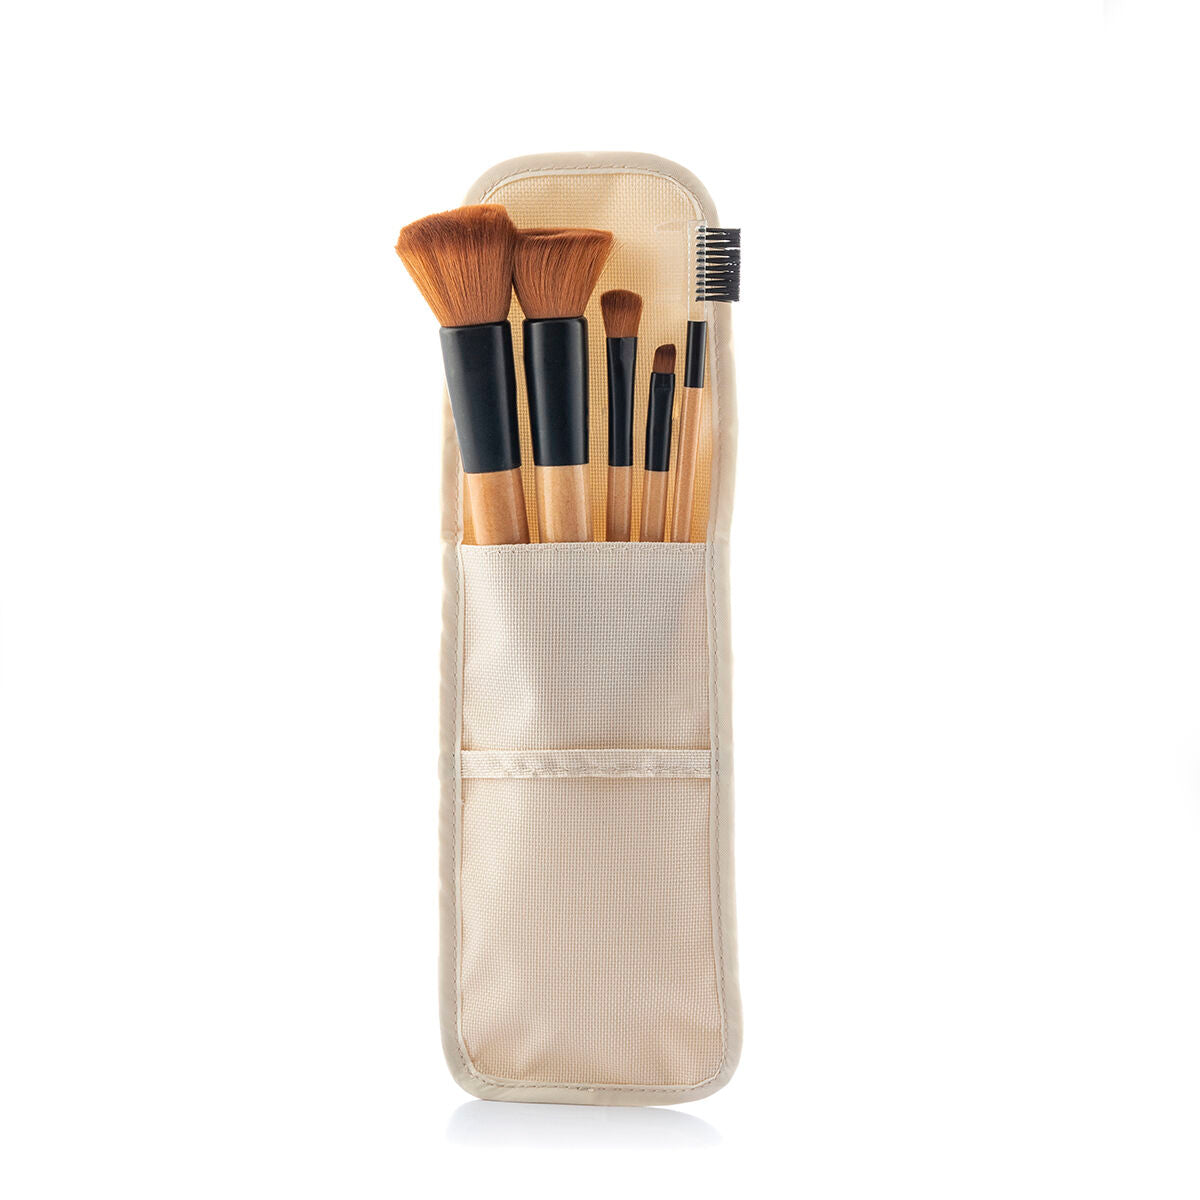 Make-up børster & bæretaske - 5 stk